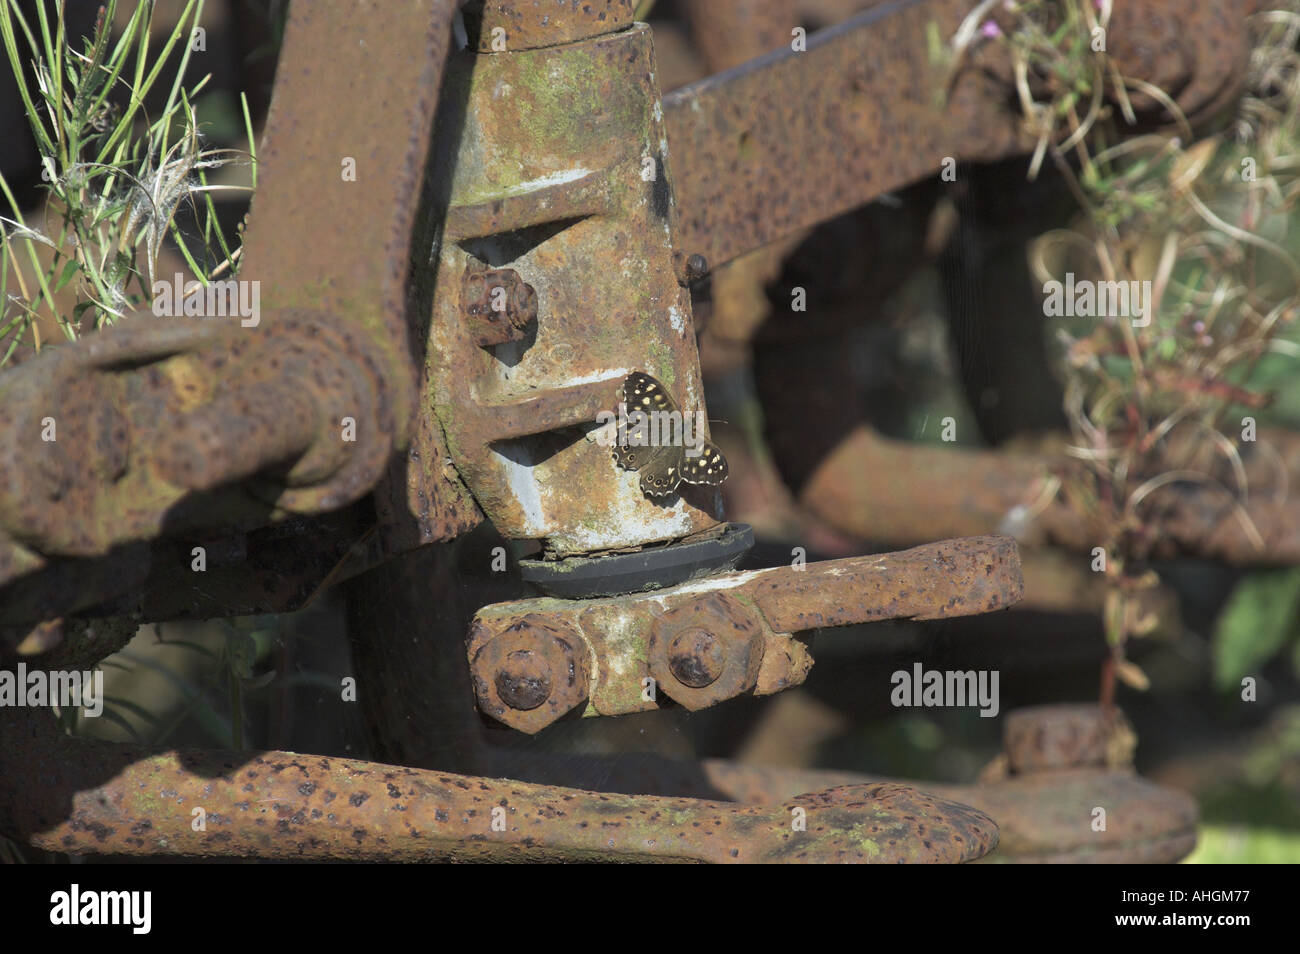 Farfalle legno maculato pararge aegeria crogiolarsi sulle vecchie macchine agricole Foto Stock